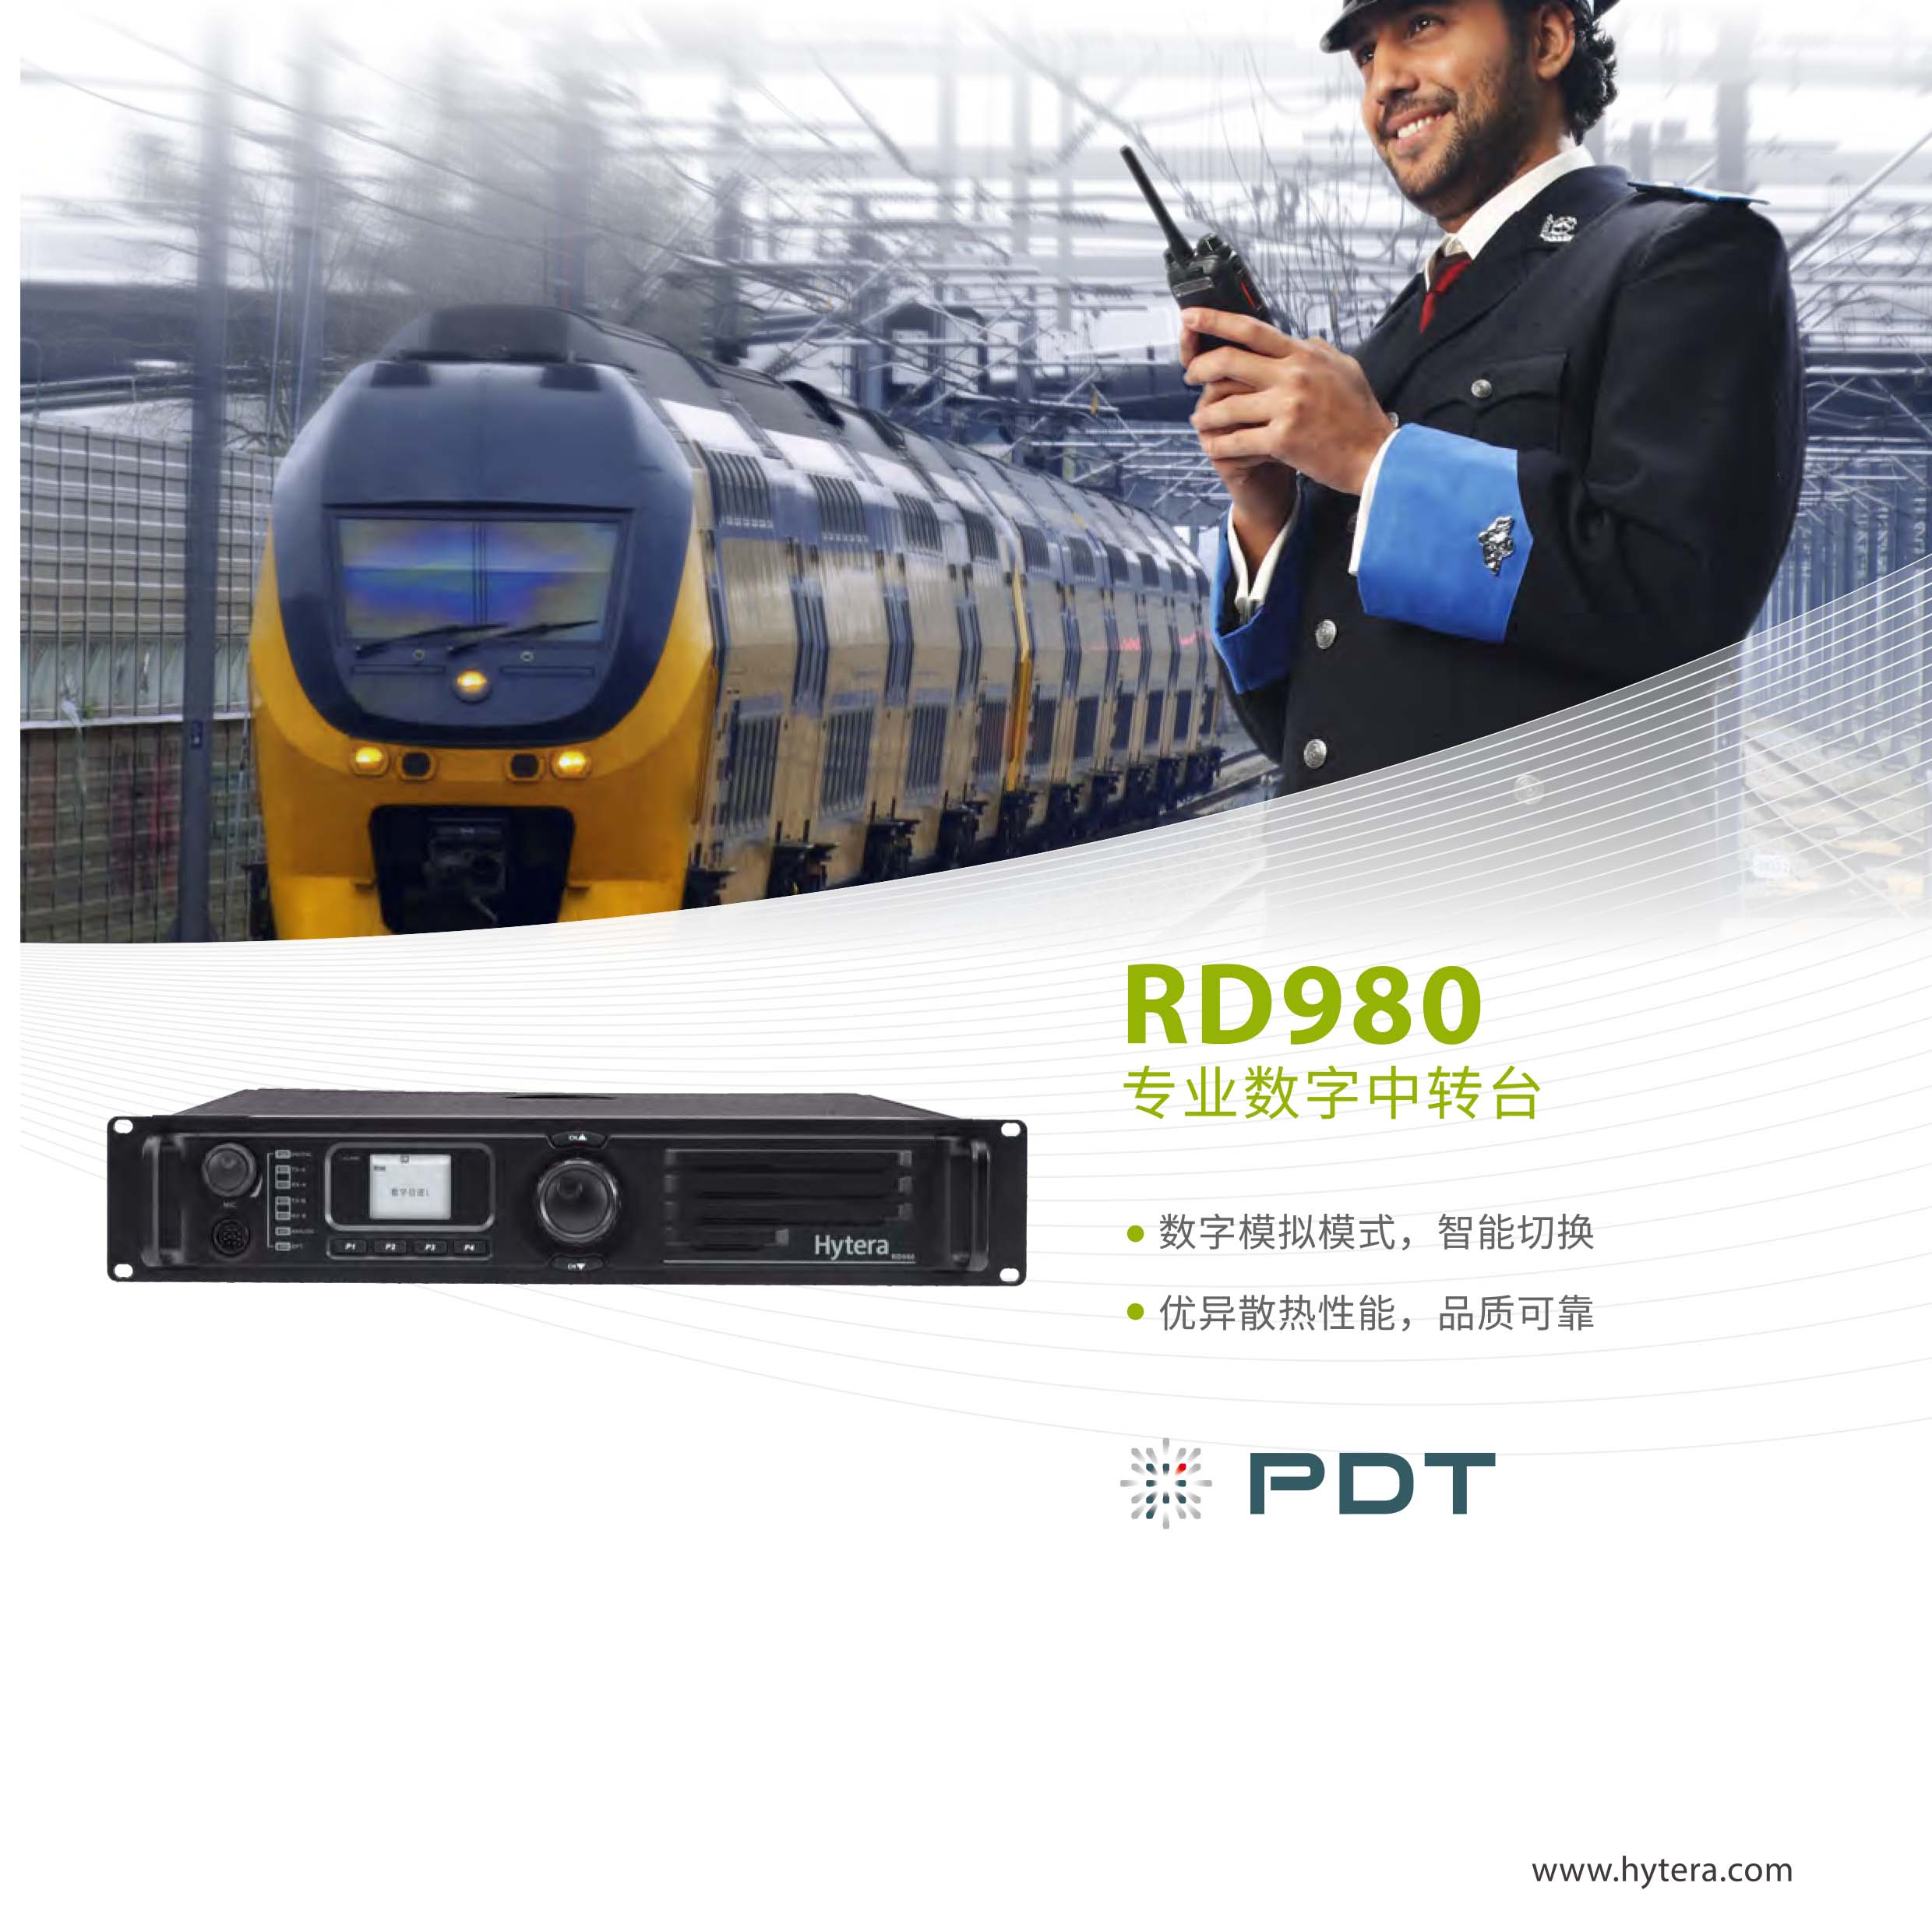 RD980 00